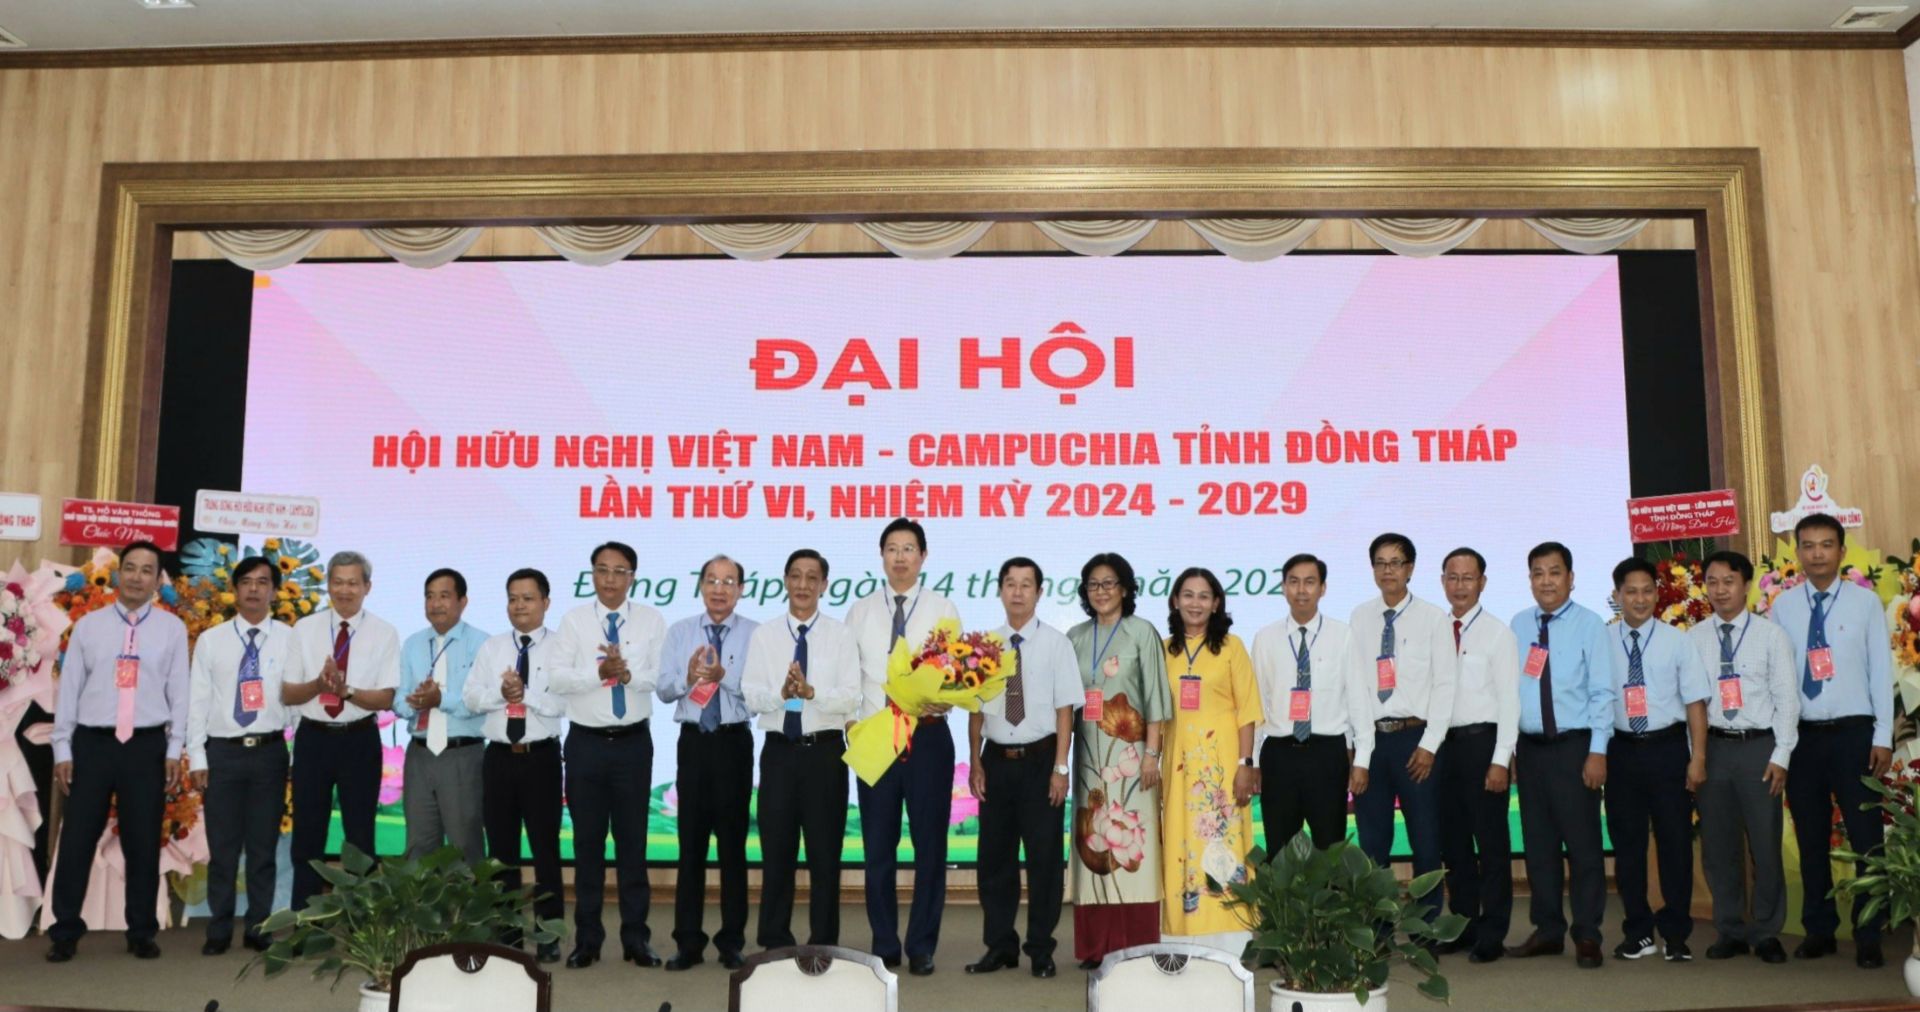 Ra mắt BCH Hội Hữu nghị VN - CPC tỉnh Đồng Tháp Khoá VI, nhiệm kỳ (2024 - 2029 ).